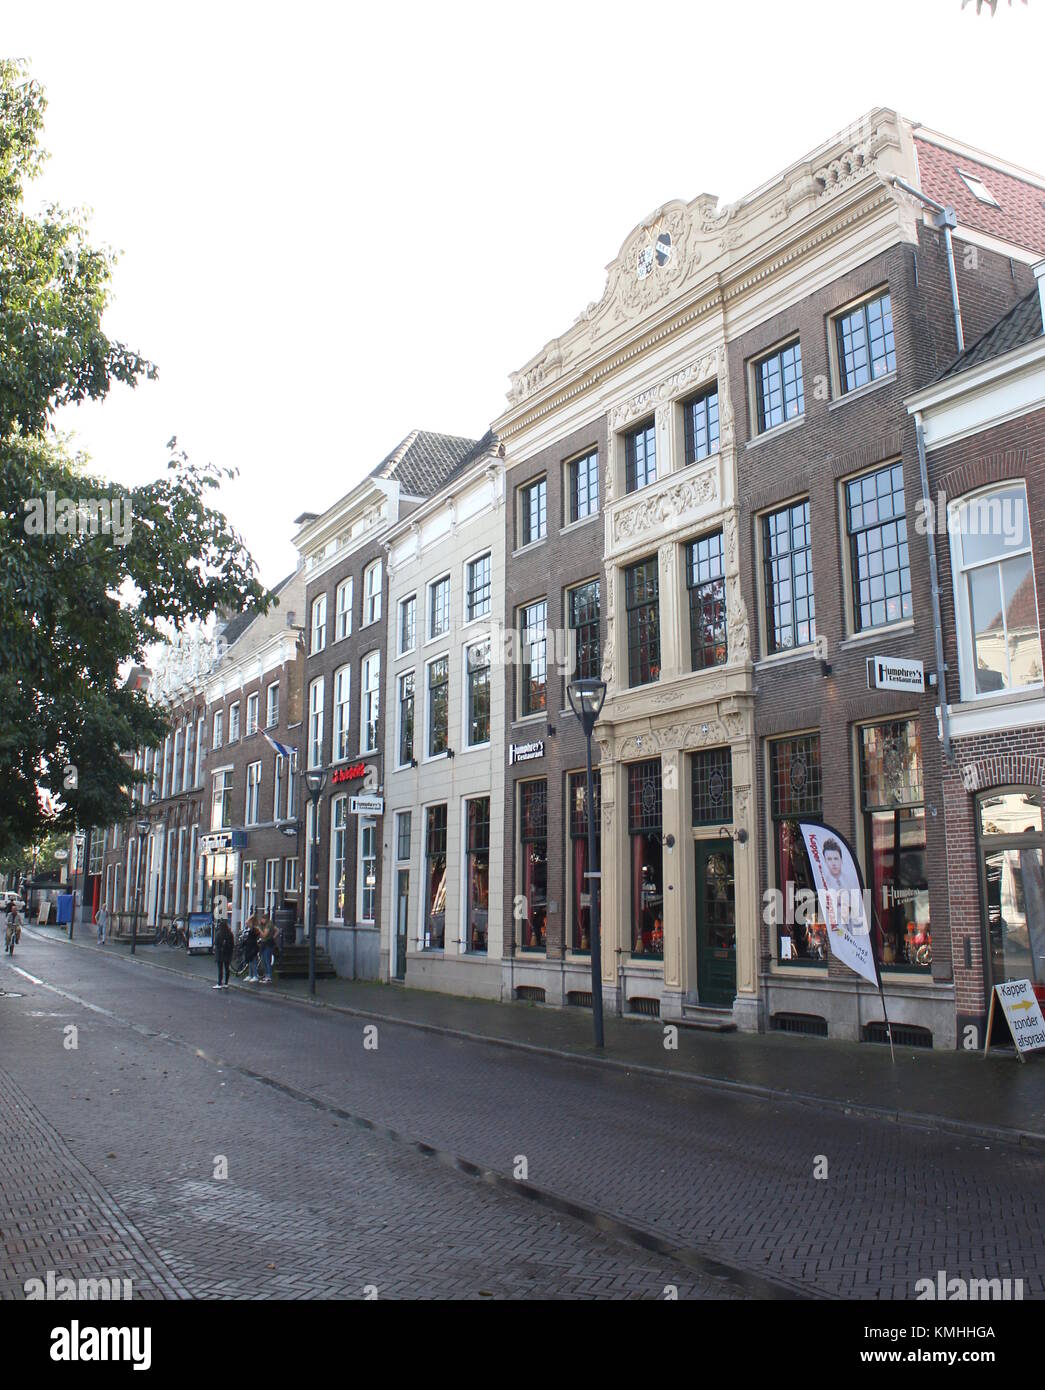 Humphrey's Restaurant Zwolle in historischen Melkmarkt Square, Zwolle, Niederlande Stockfoto